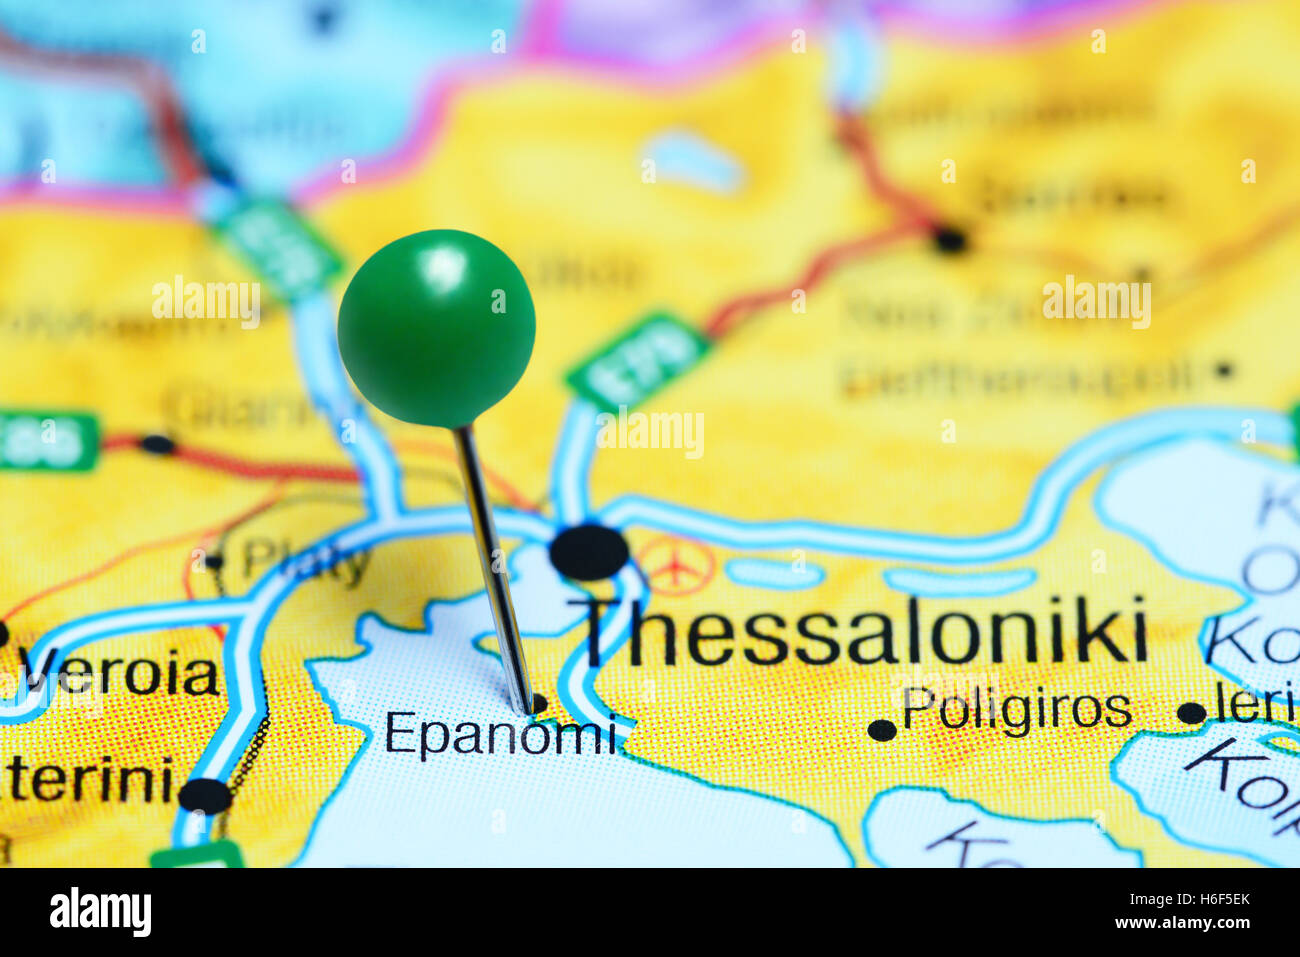 Epanomi imperniata su una mappa della Grecia Foto Stock